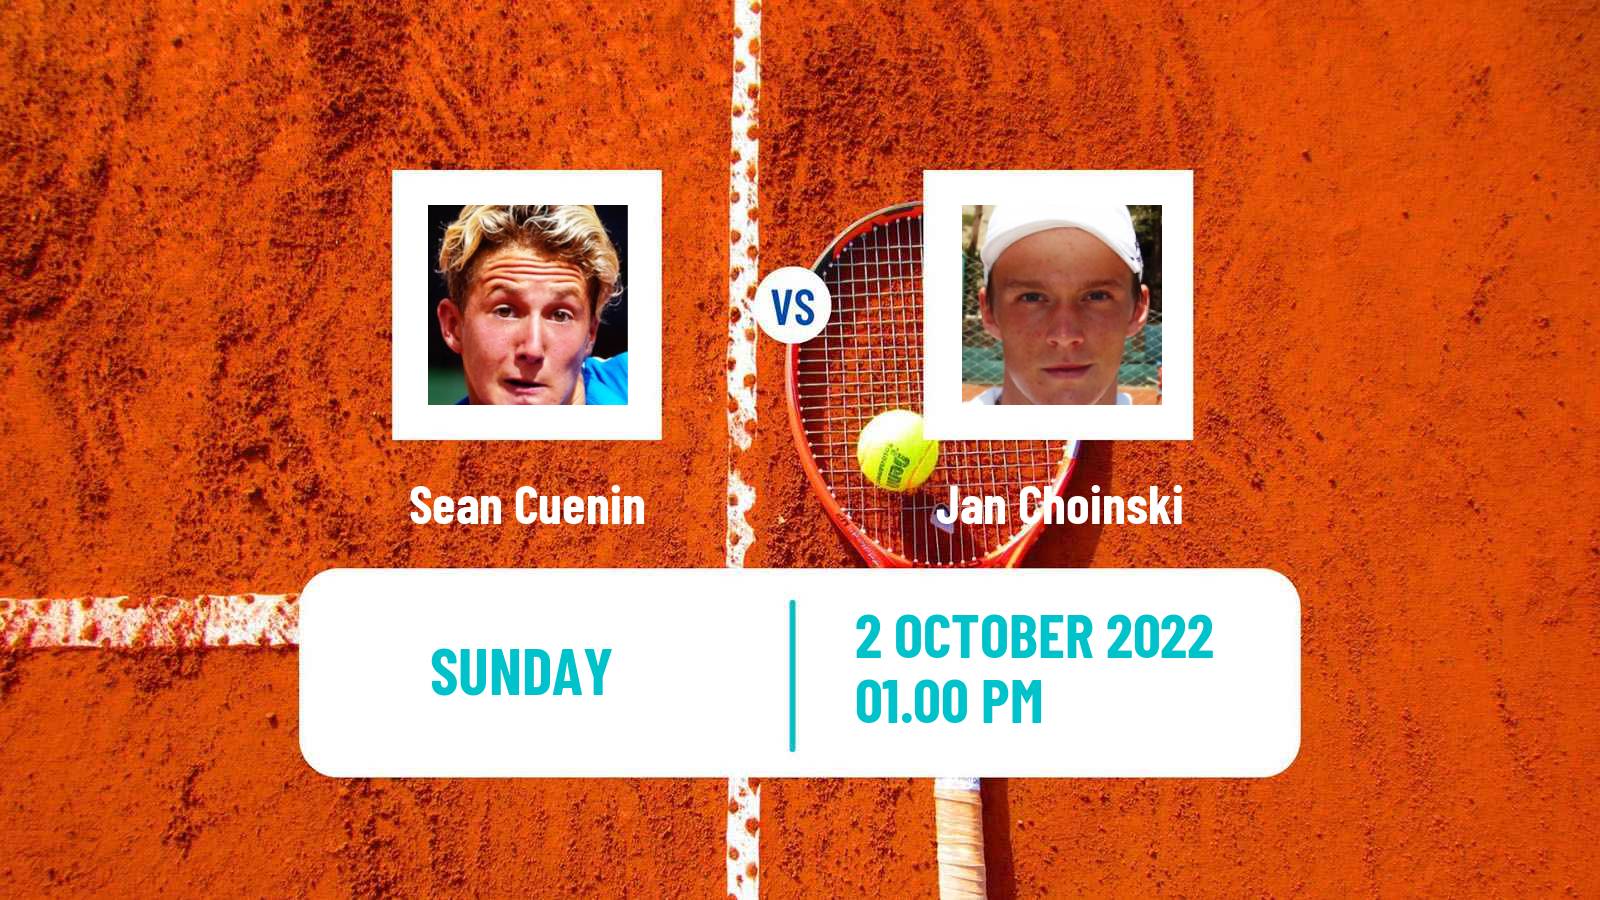 Tennis ATP Challenger Sean Cuenin - Jan Choinski